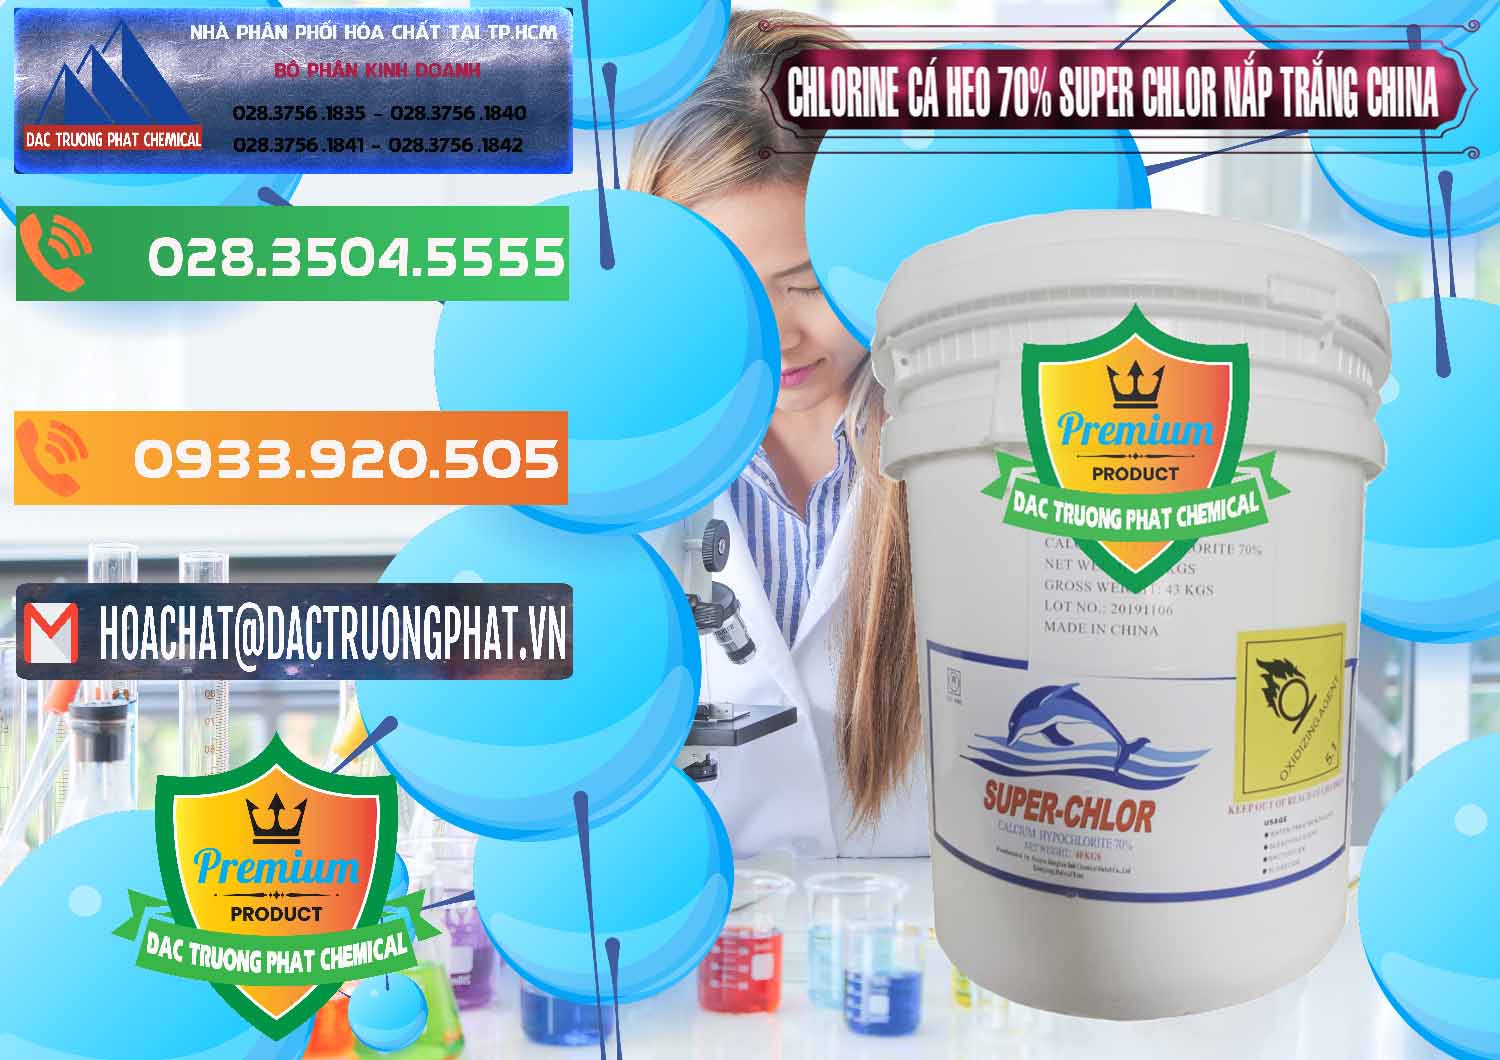 Nơi chuyên phân phối & bán Clorin - Chlorine Cá Heo 70% Super Chlor Nắp Trắng Trung Quốc China - 0240 - Đơn vị cung cấp & phân phối hóa chất tại TP.HCM - hoachatxulynuoc.com.vn